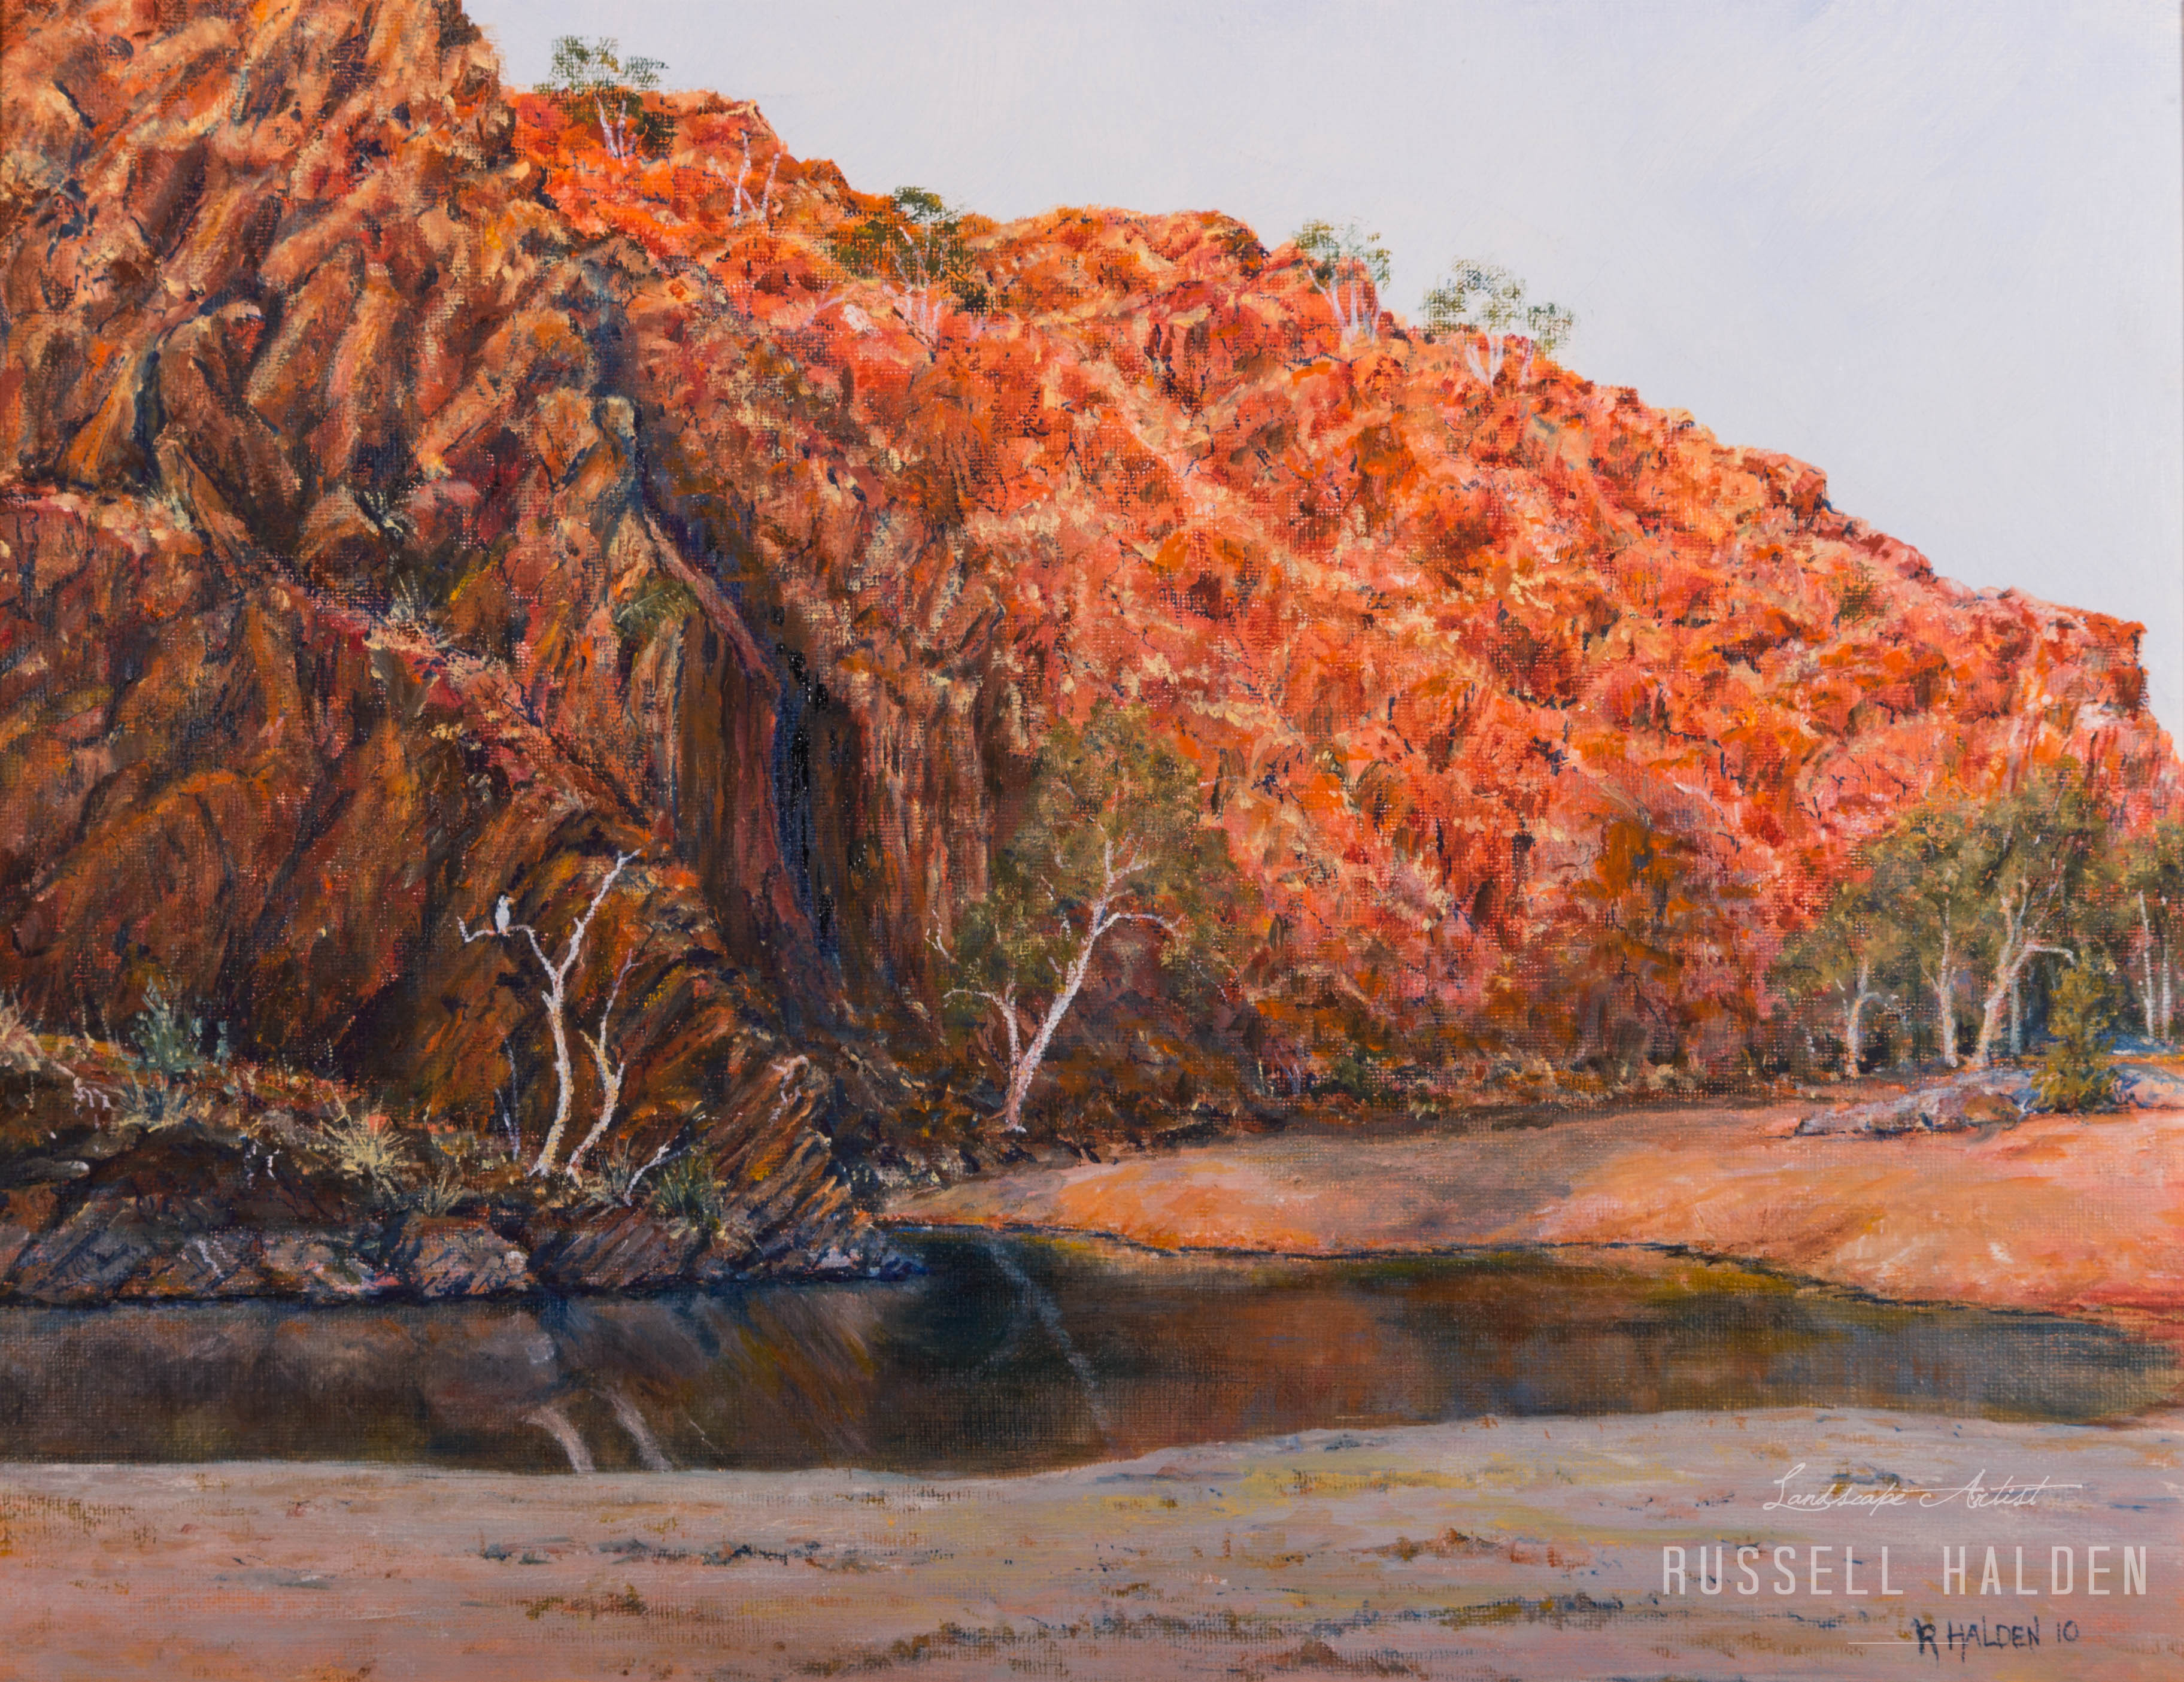 Ormiston Gorge - Central Australia